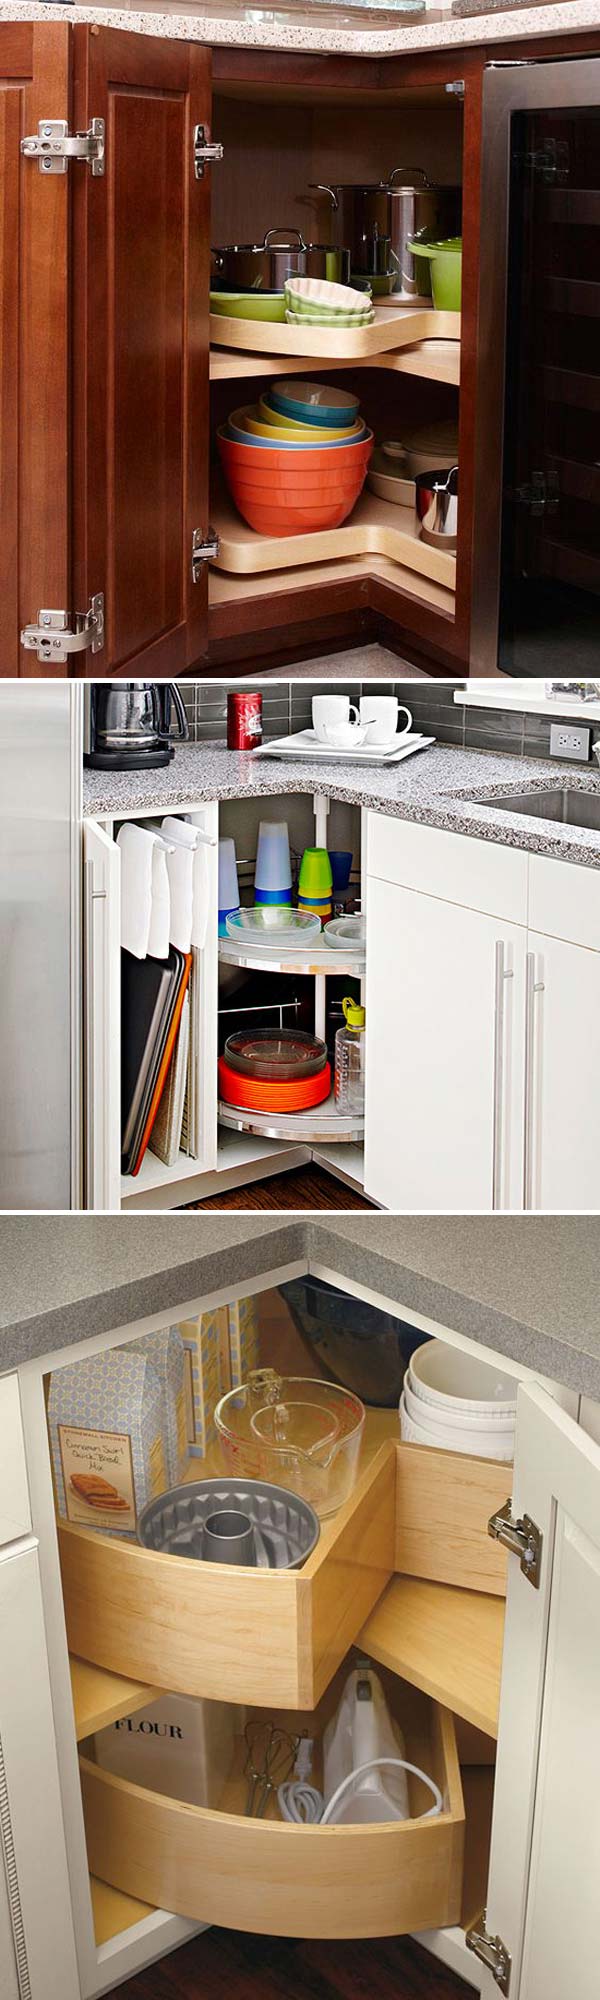 Storage for corner kitchen cabinet 3.jpg